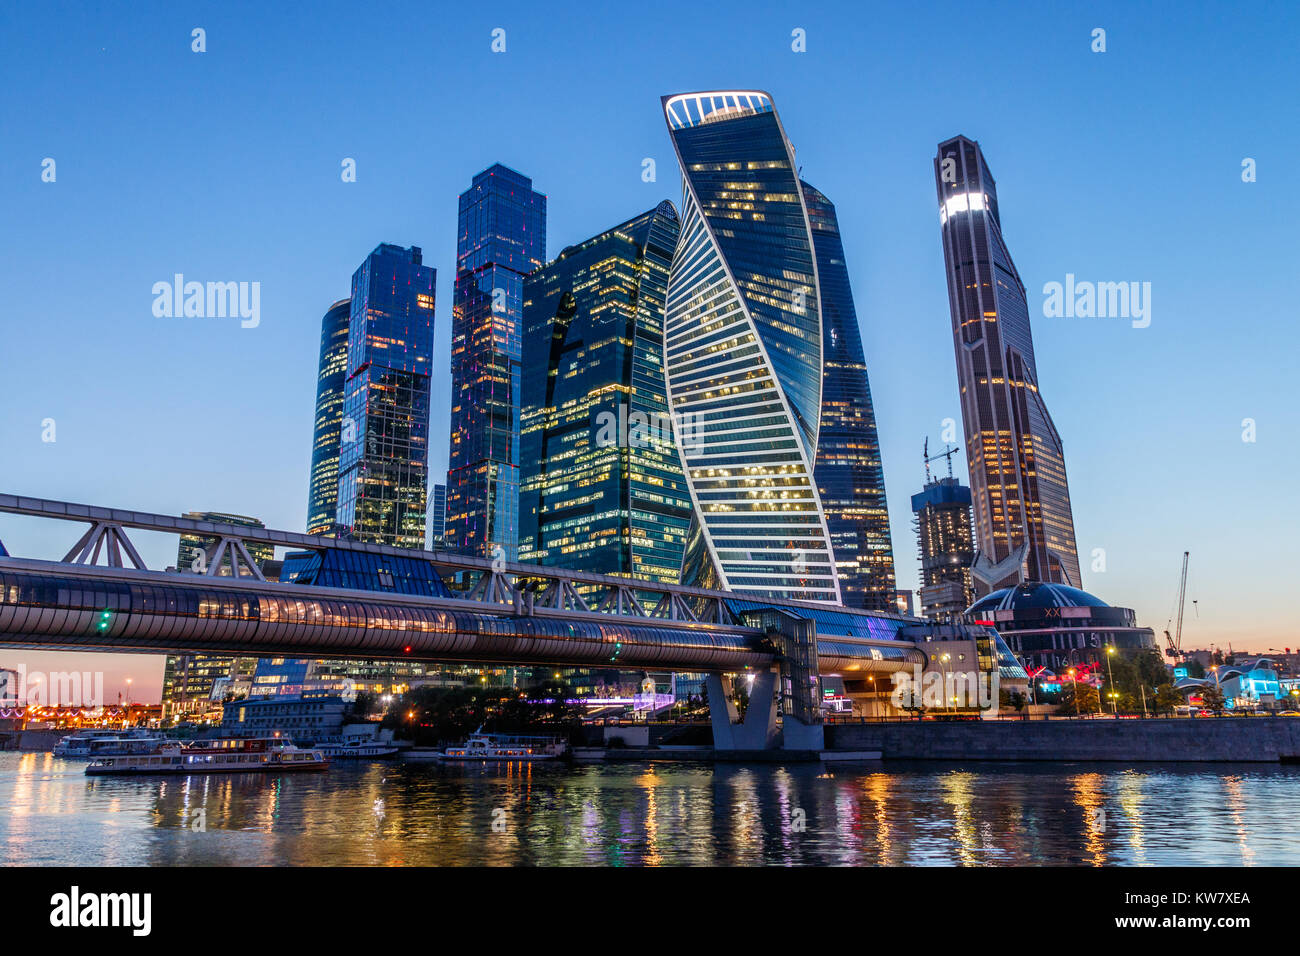 Il futuristico grattacieli del Moscow International Business Center (MIBC), denominata anche "città osca', presso il fiume Moskva durante il tramonto. La Russia. Foto Stock